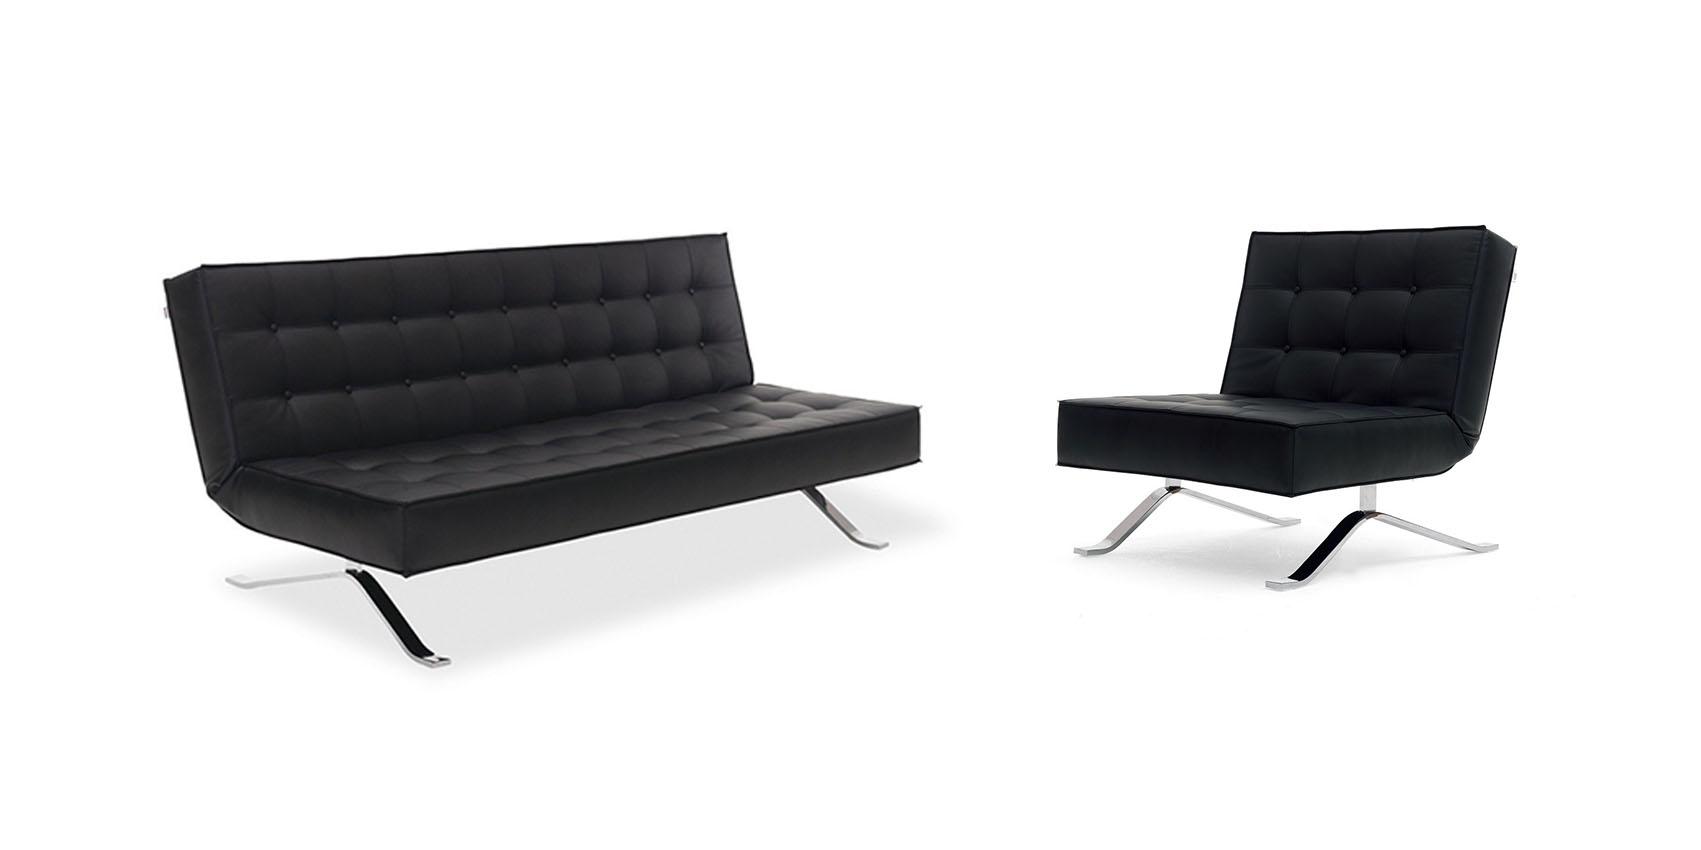 

    
Black Faux Leather Sofa Bed & Chair Set 2Pcs Contemporary J&M JK044
